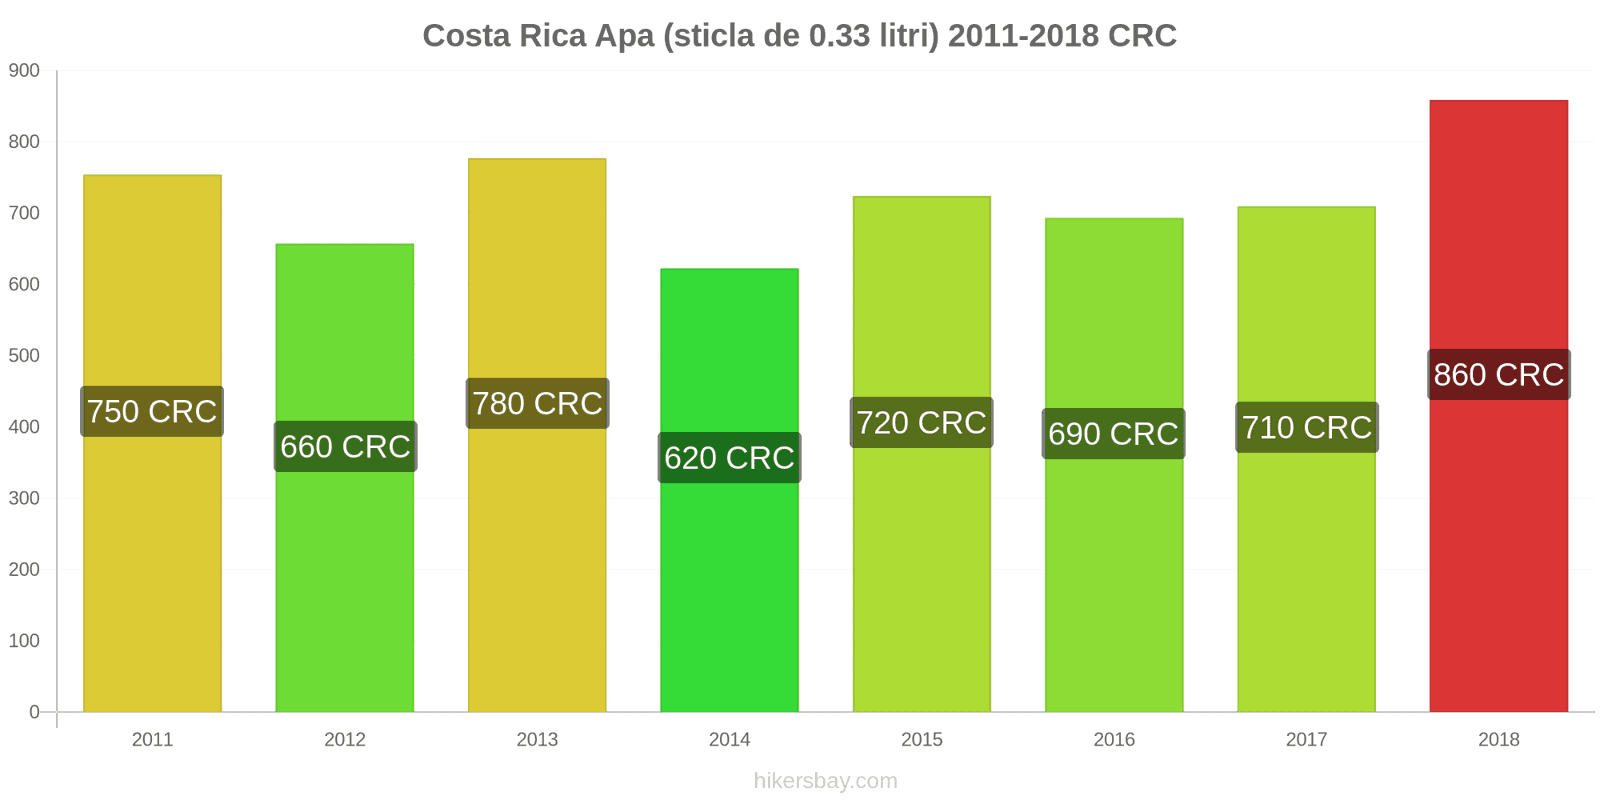 Costa Rica schimbări de prețuri Apa (sticla de 0.33 litri) hikersbay.com